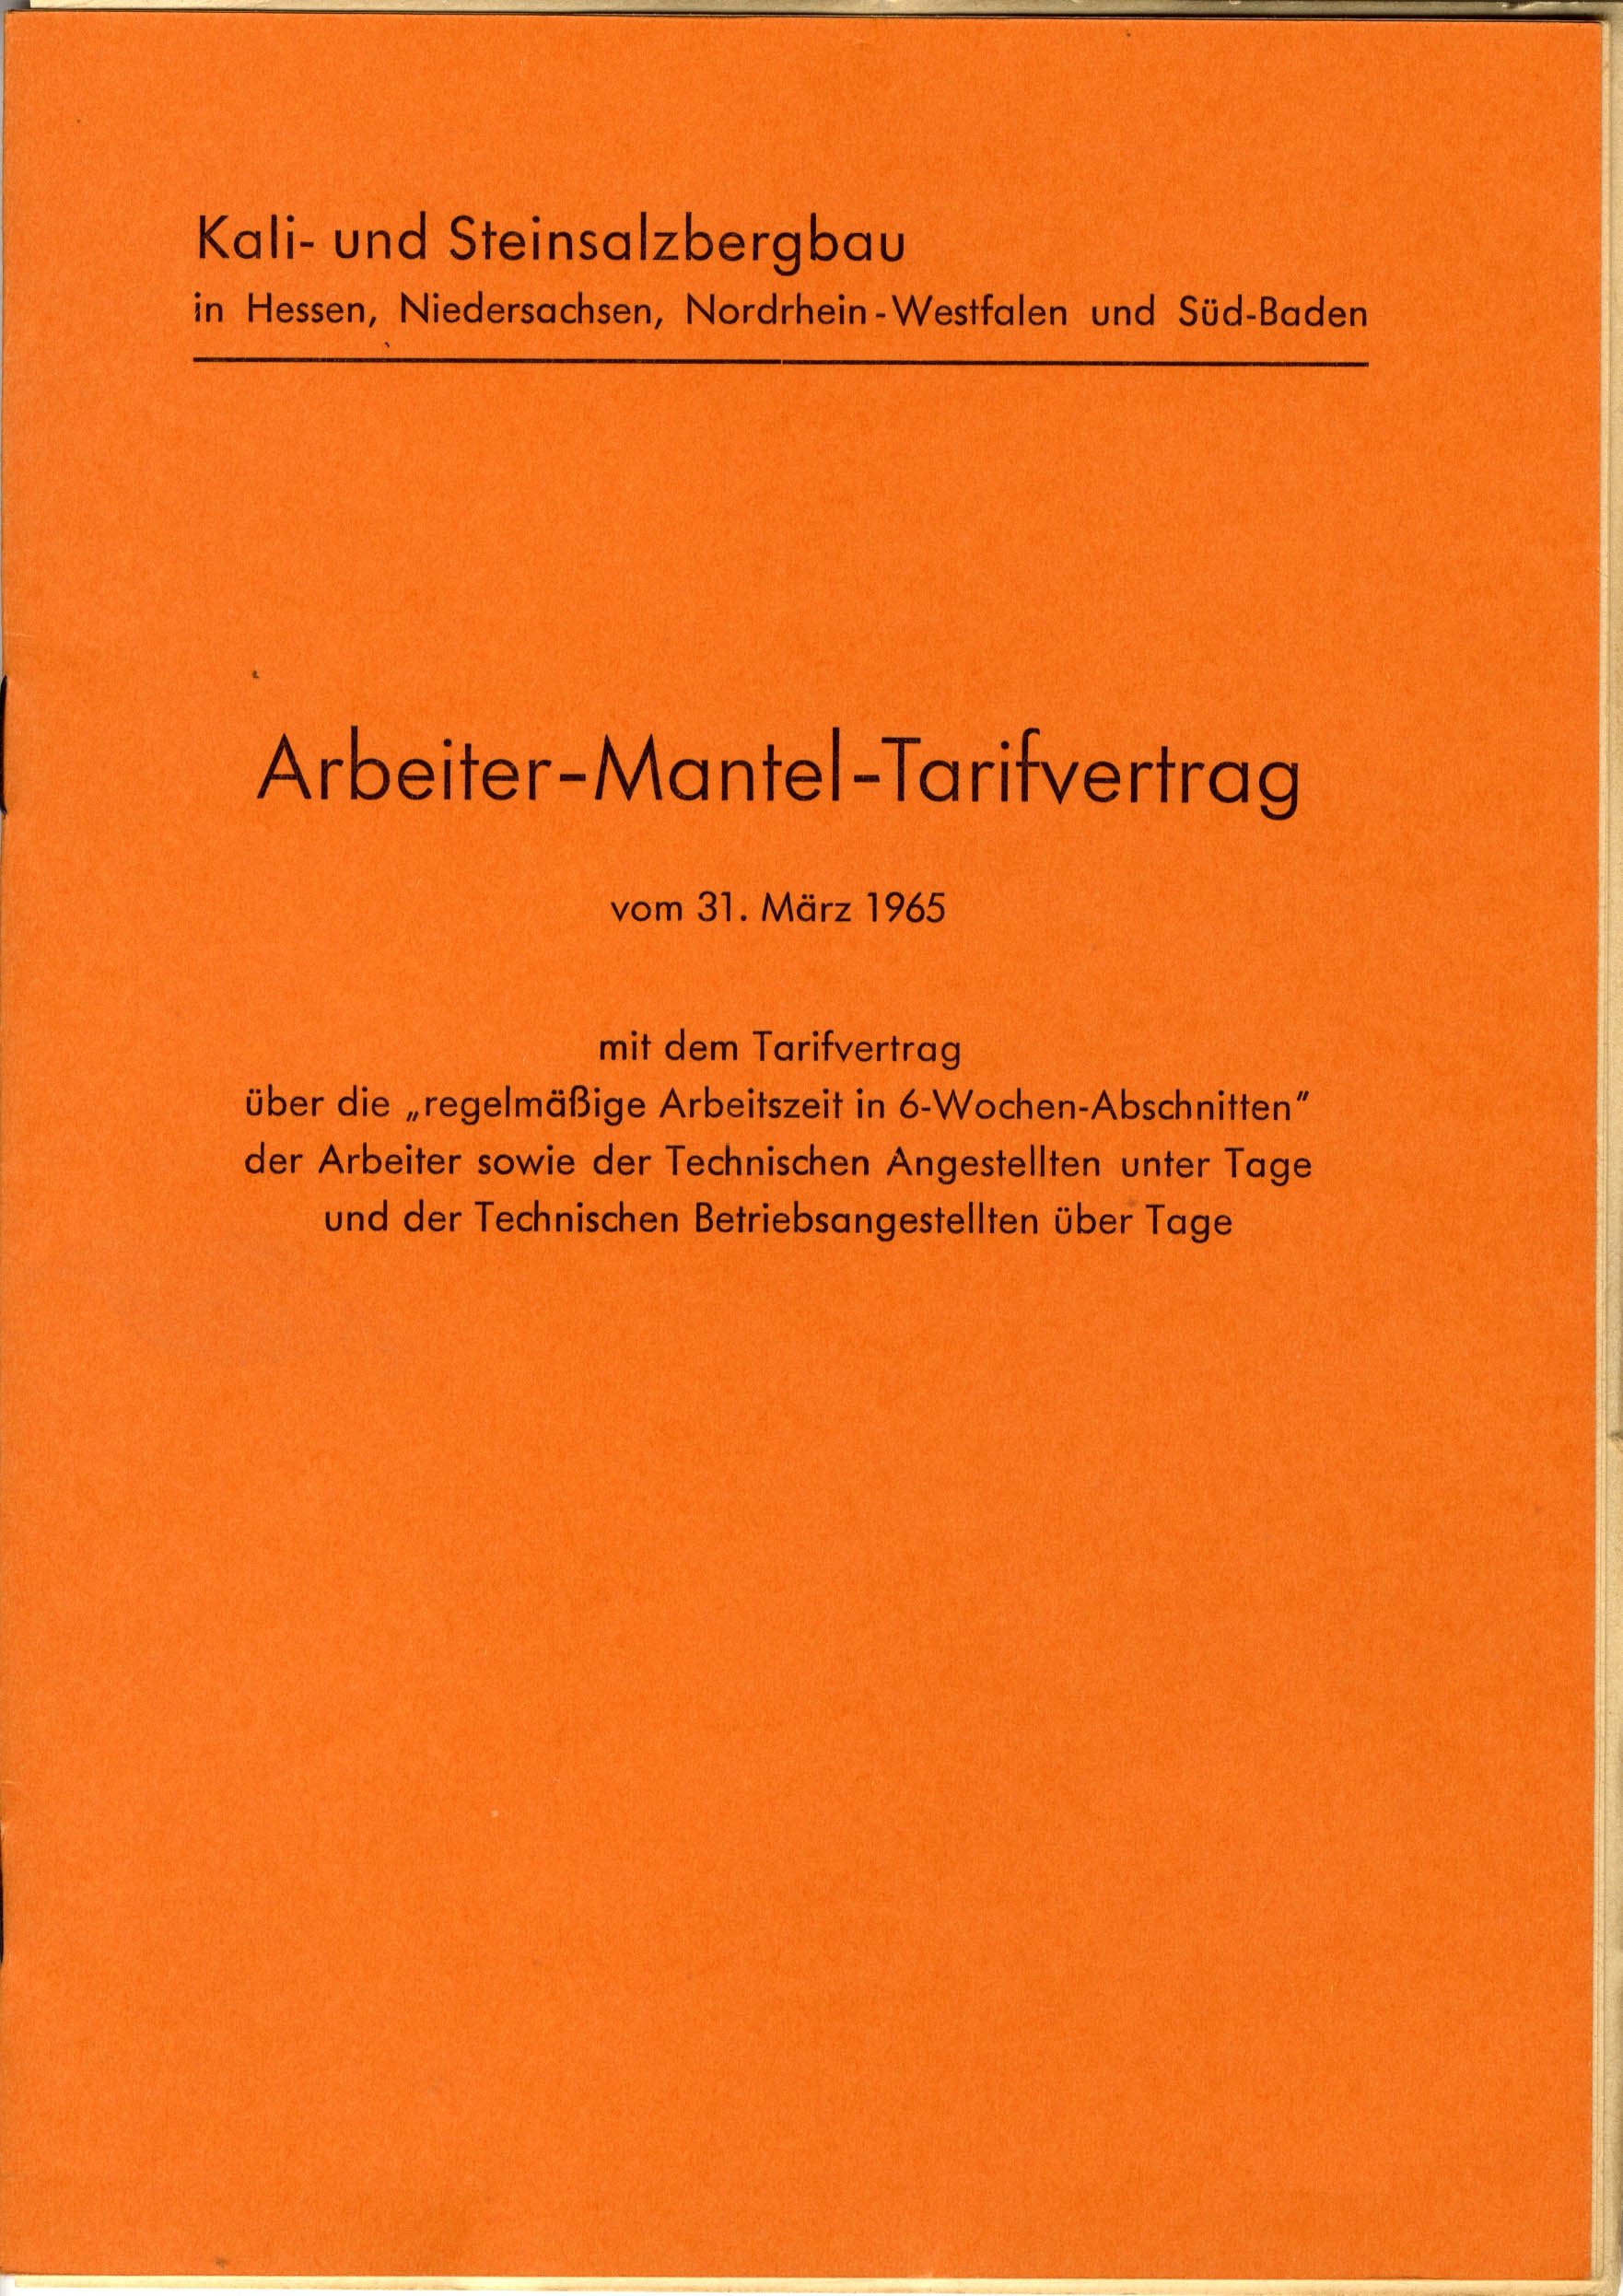 Arbeiter-Mantel-Tarifvertrag vom 31. März 1965 (Werra-Kalibergbau-Museum, Heringen/W. CC BY-NC-SA)